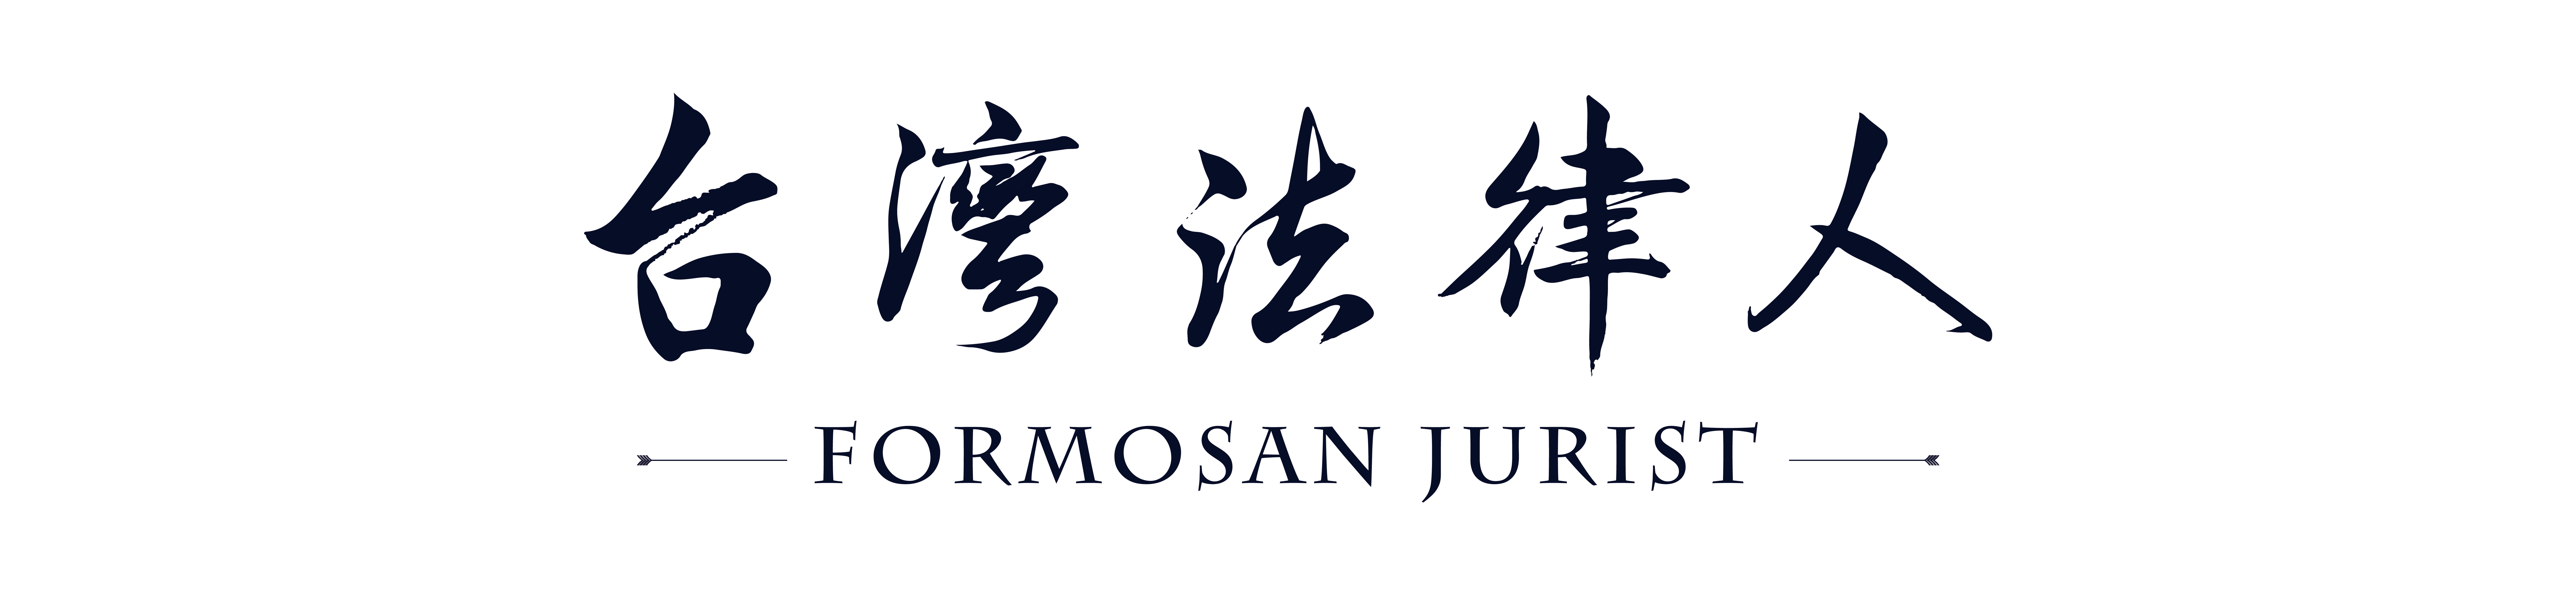 台灣法律人電子書網站